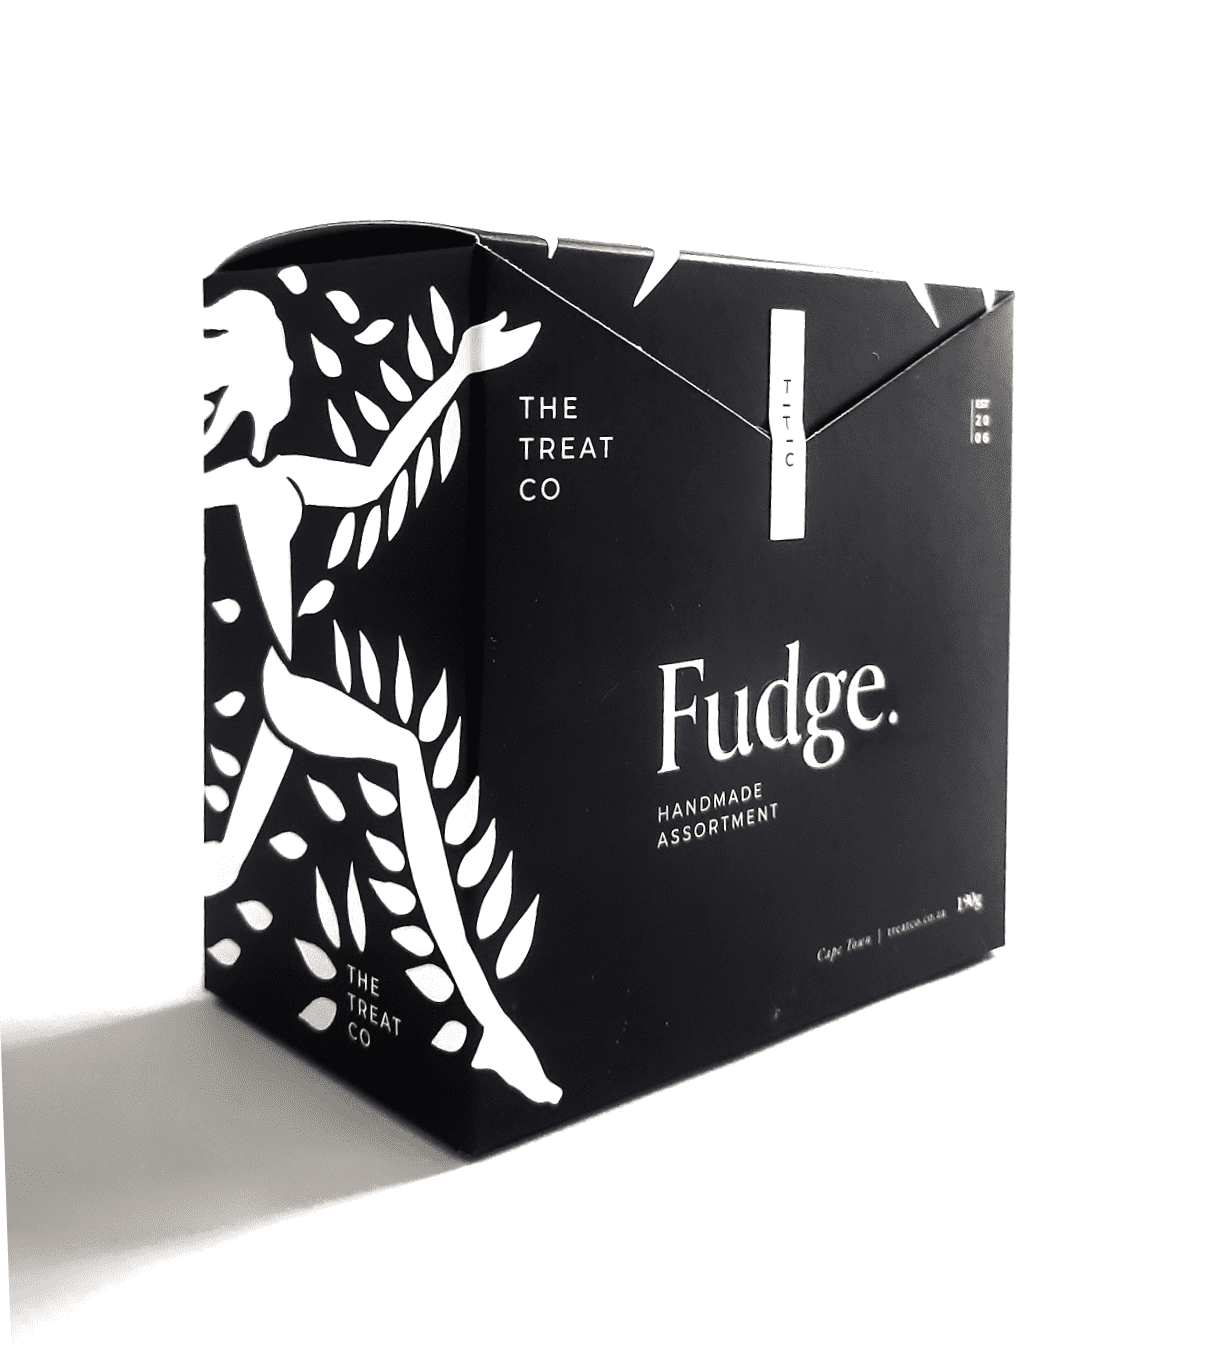 Handmade Fudge Assortments Gift Box